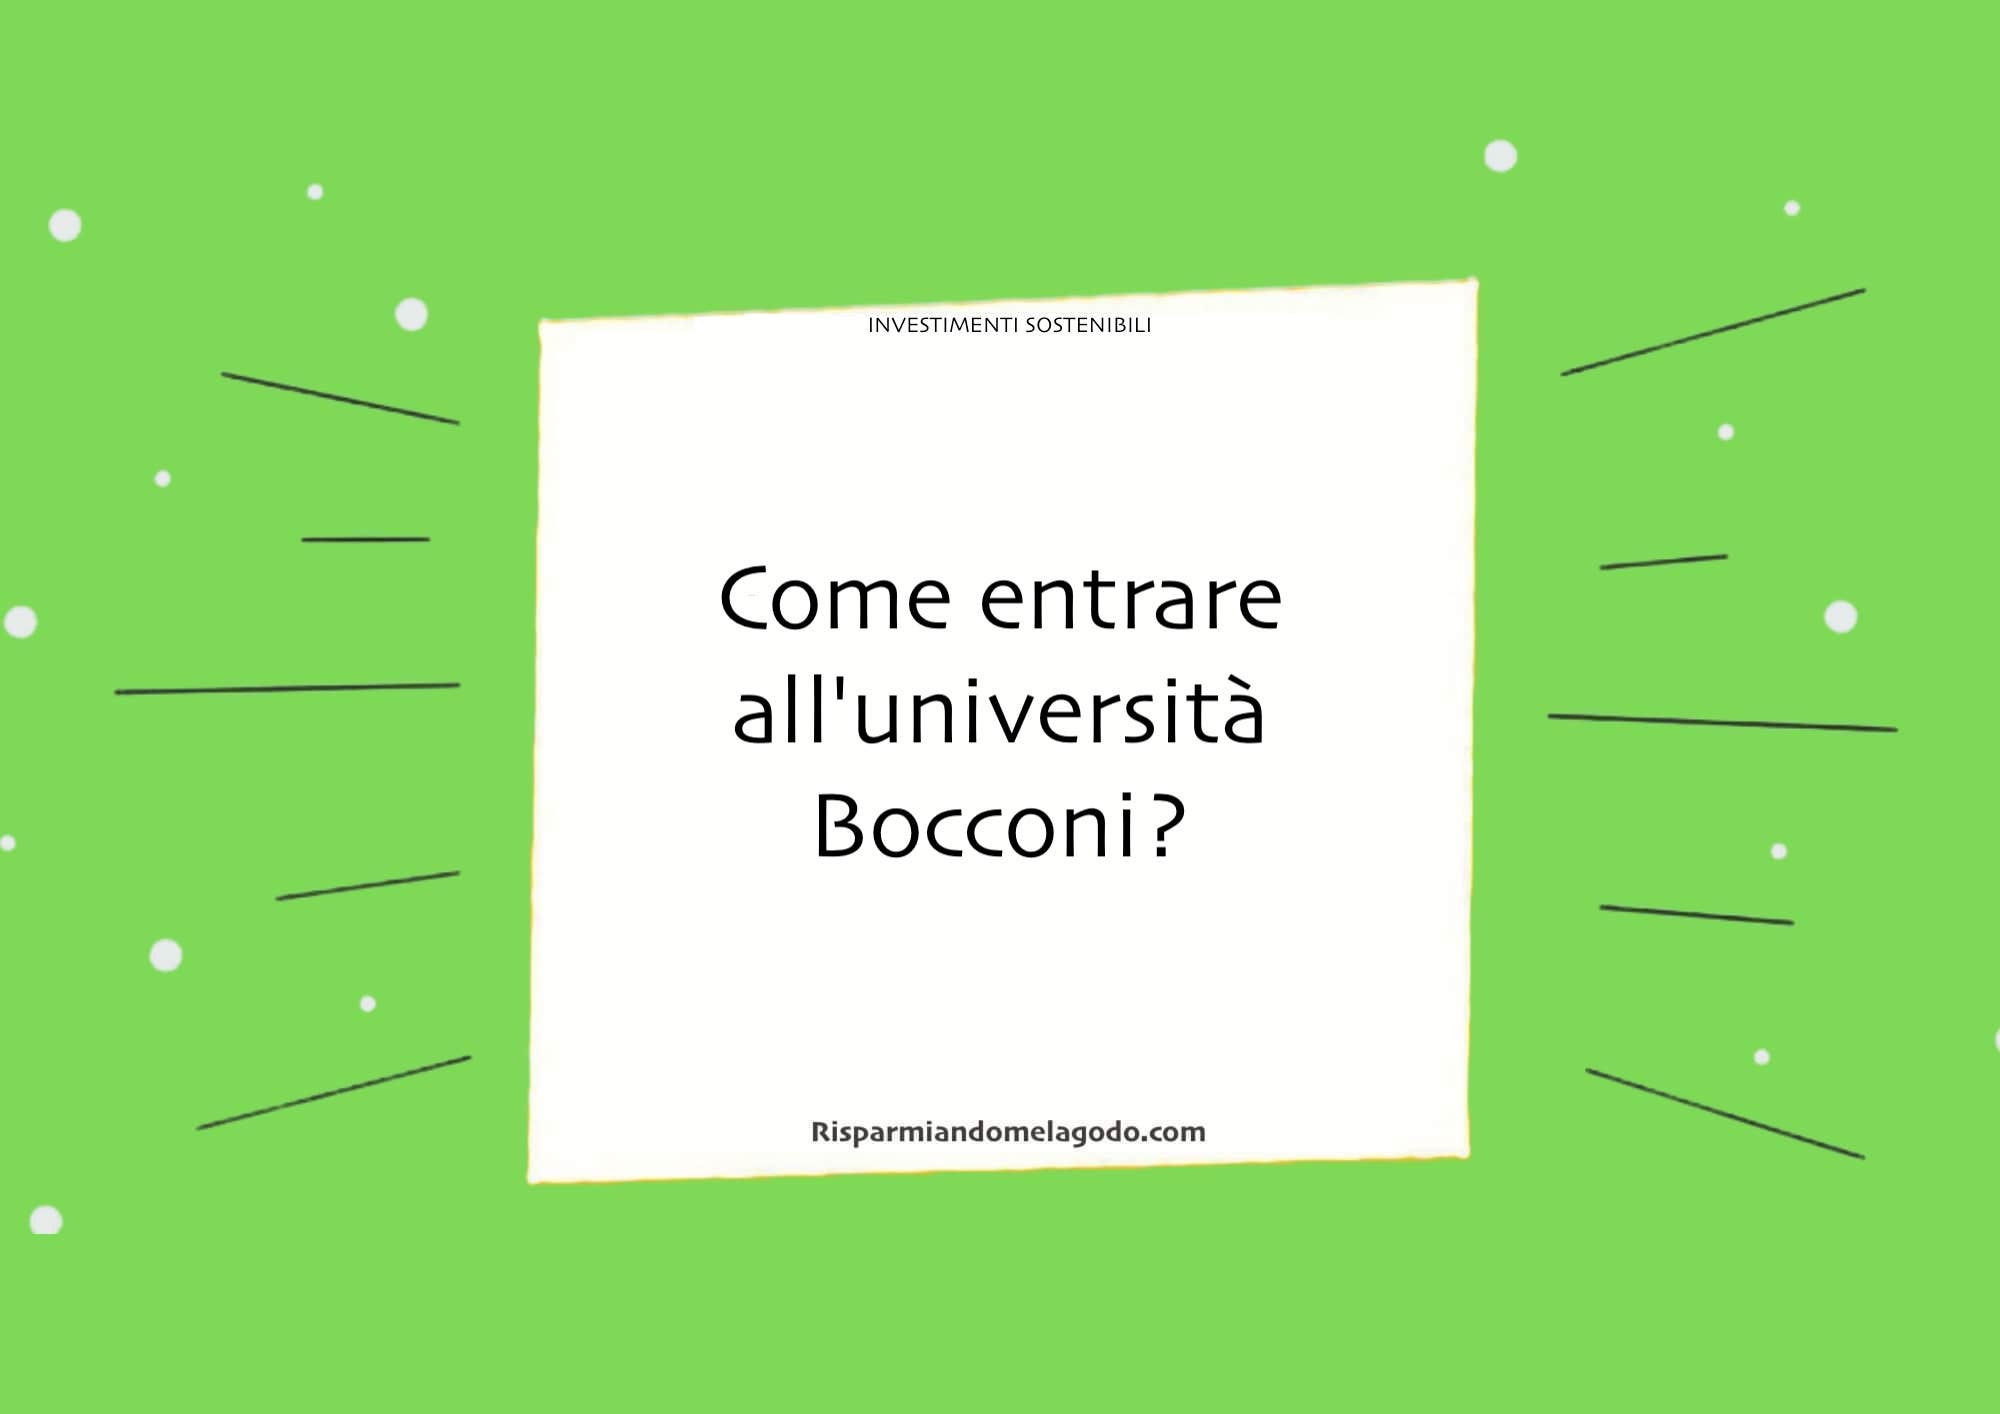 Come entrare all'università Bocconi?